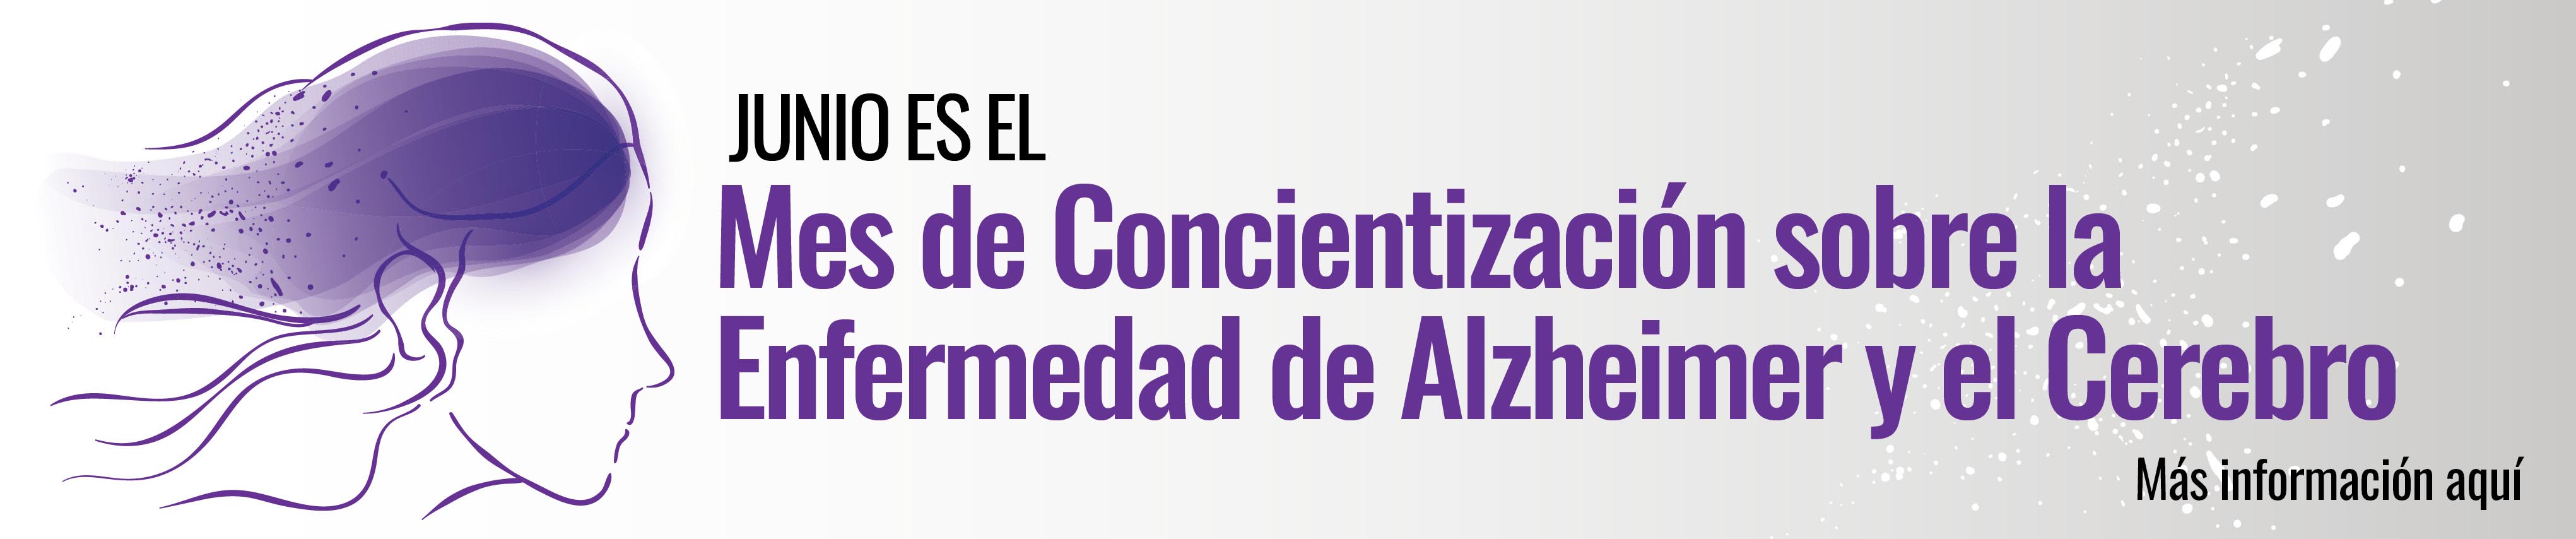 Junio es el Mes de Concientización sobre la Enfermedad de Alzheimer y el Cerebro